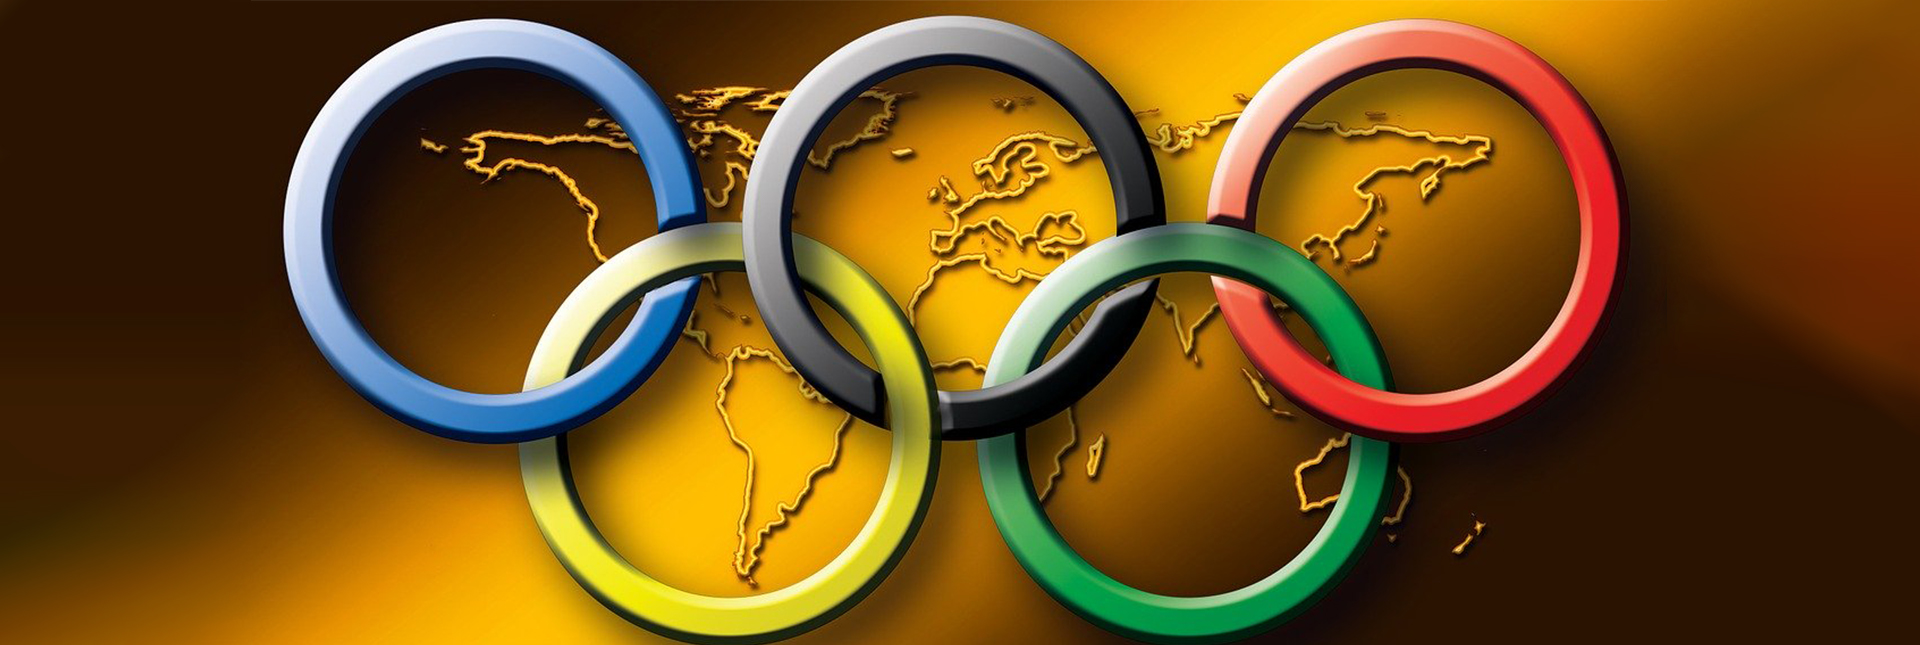 String string Brein vertrekken Tien dingen die je nog niet wist over de Olympische Spelen! - Influencers  of Sports